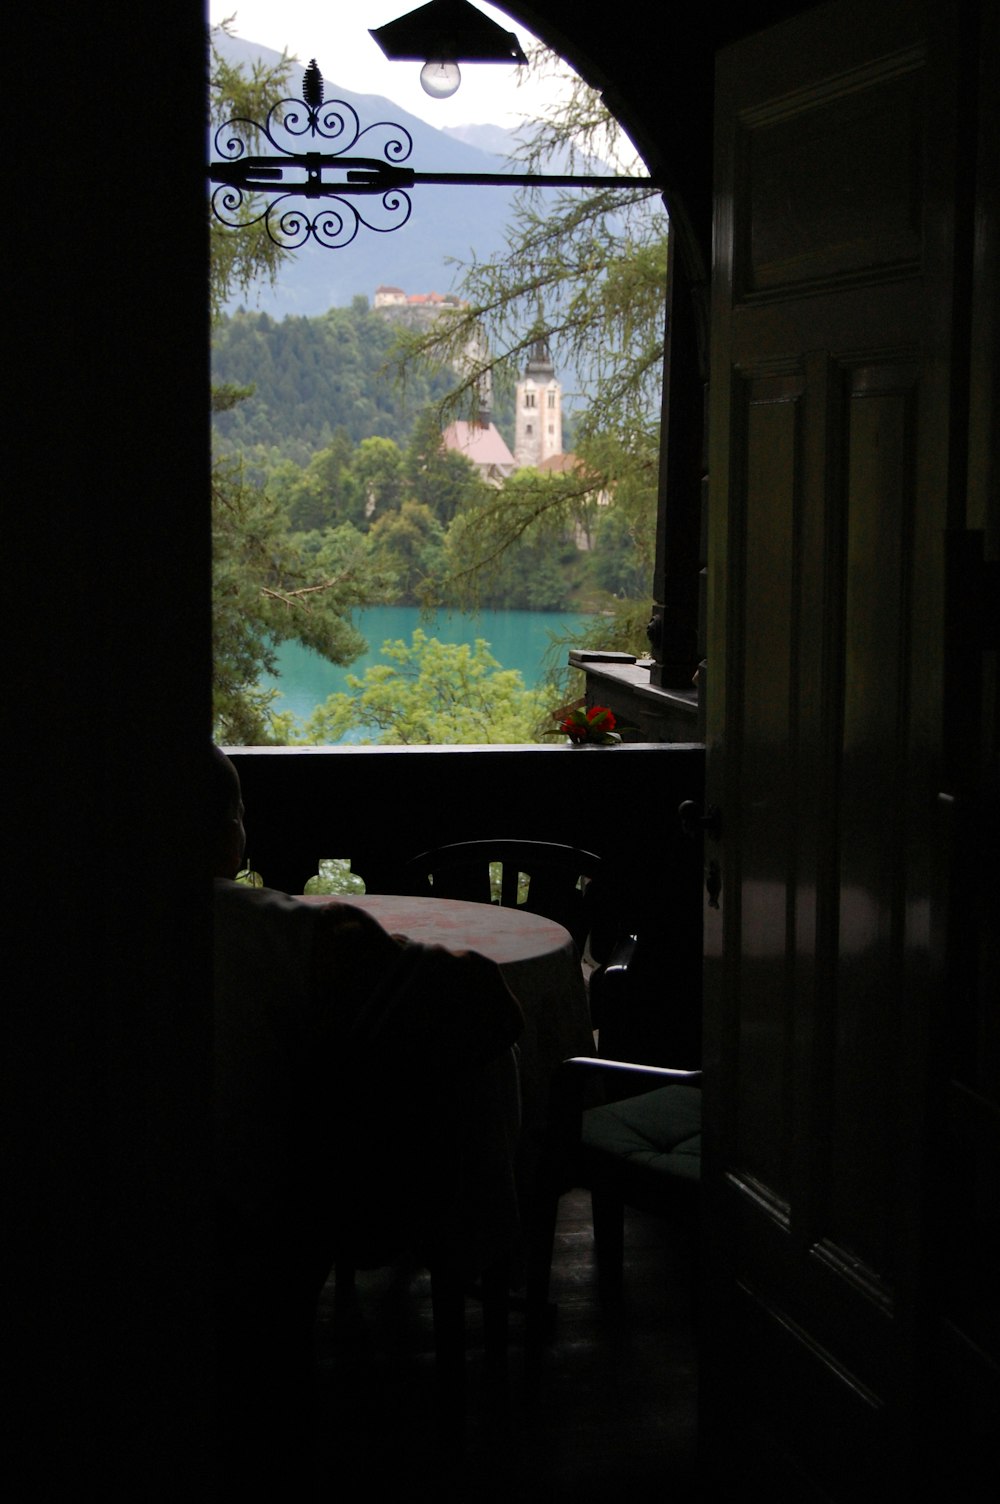 a view of a lake through an open door